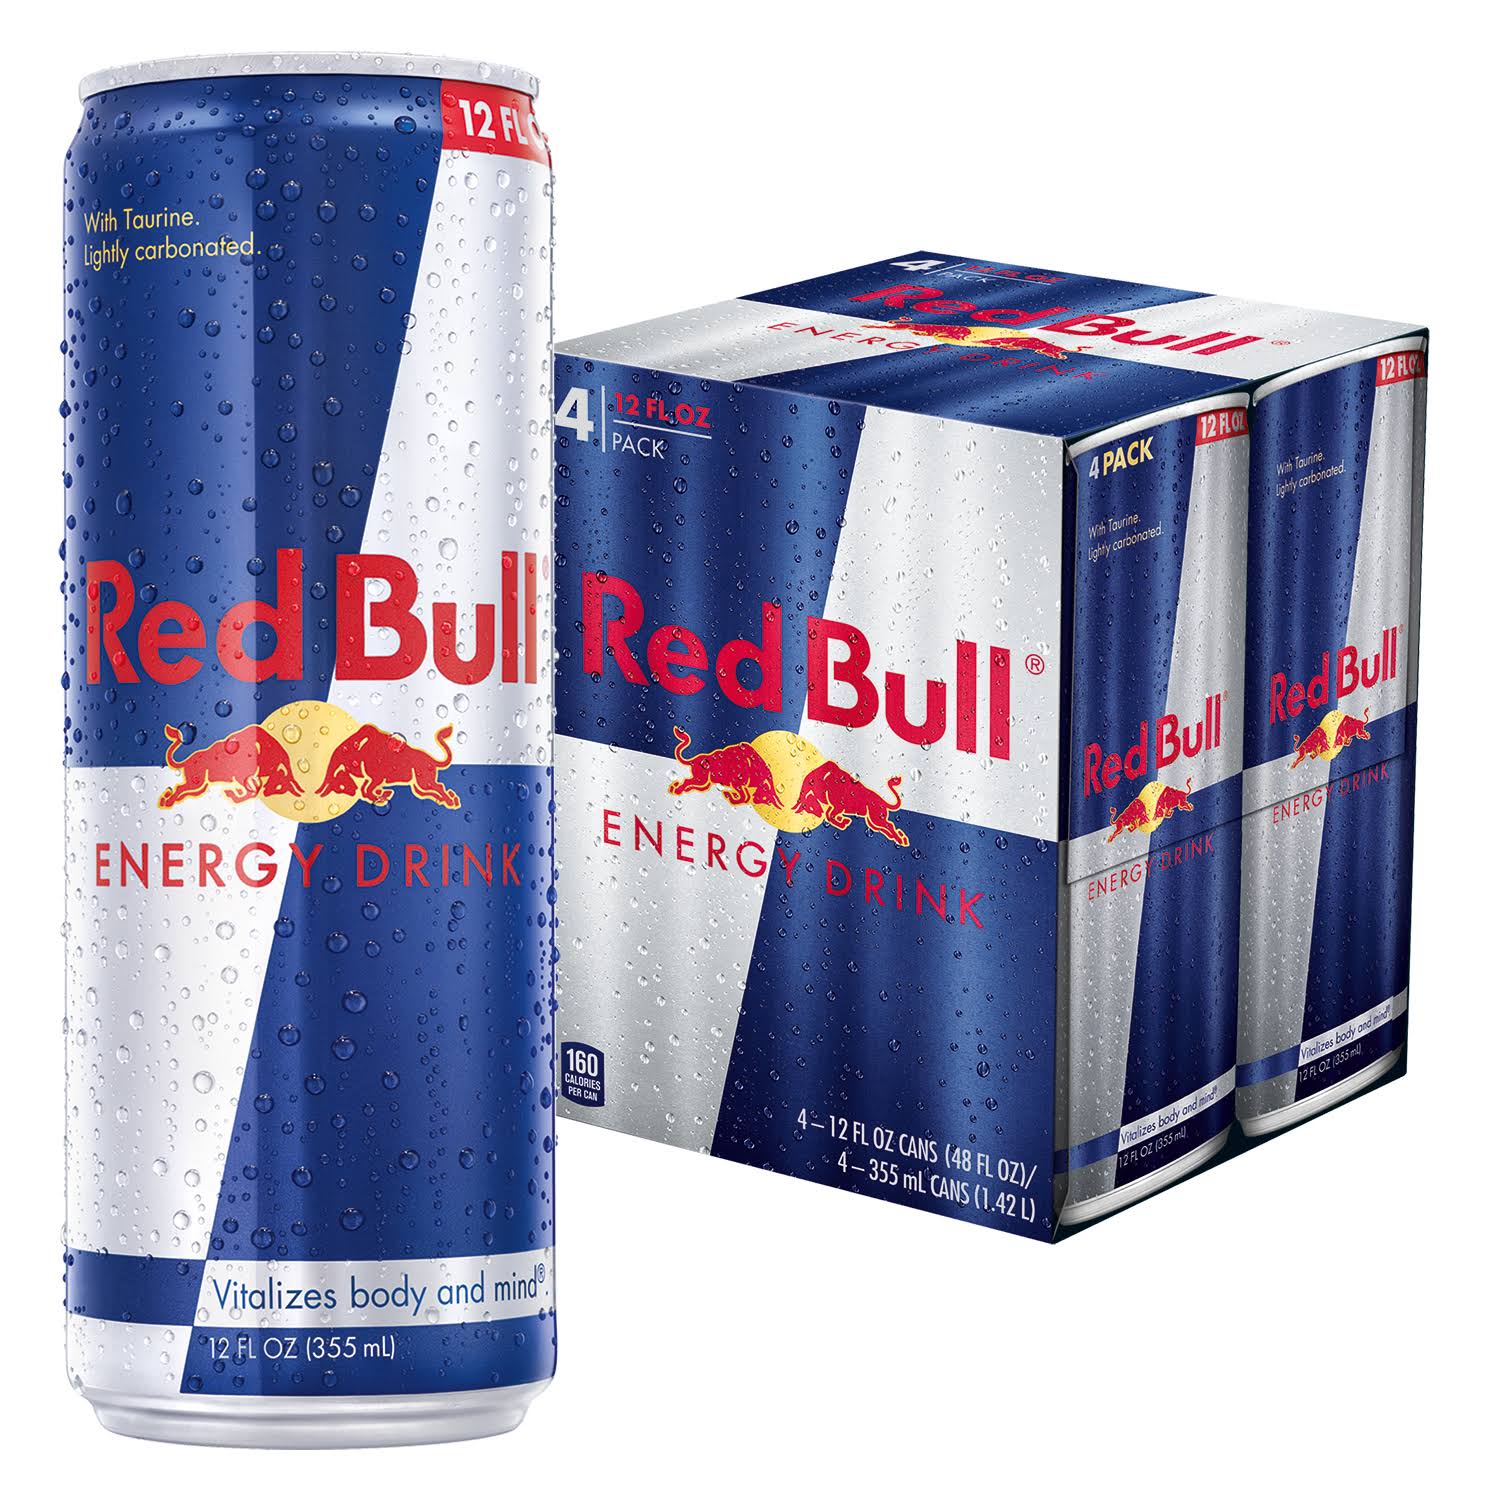 Red Bull Energy Drink - 4 Pack, 12oz